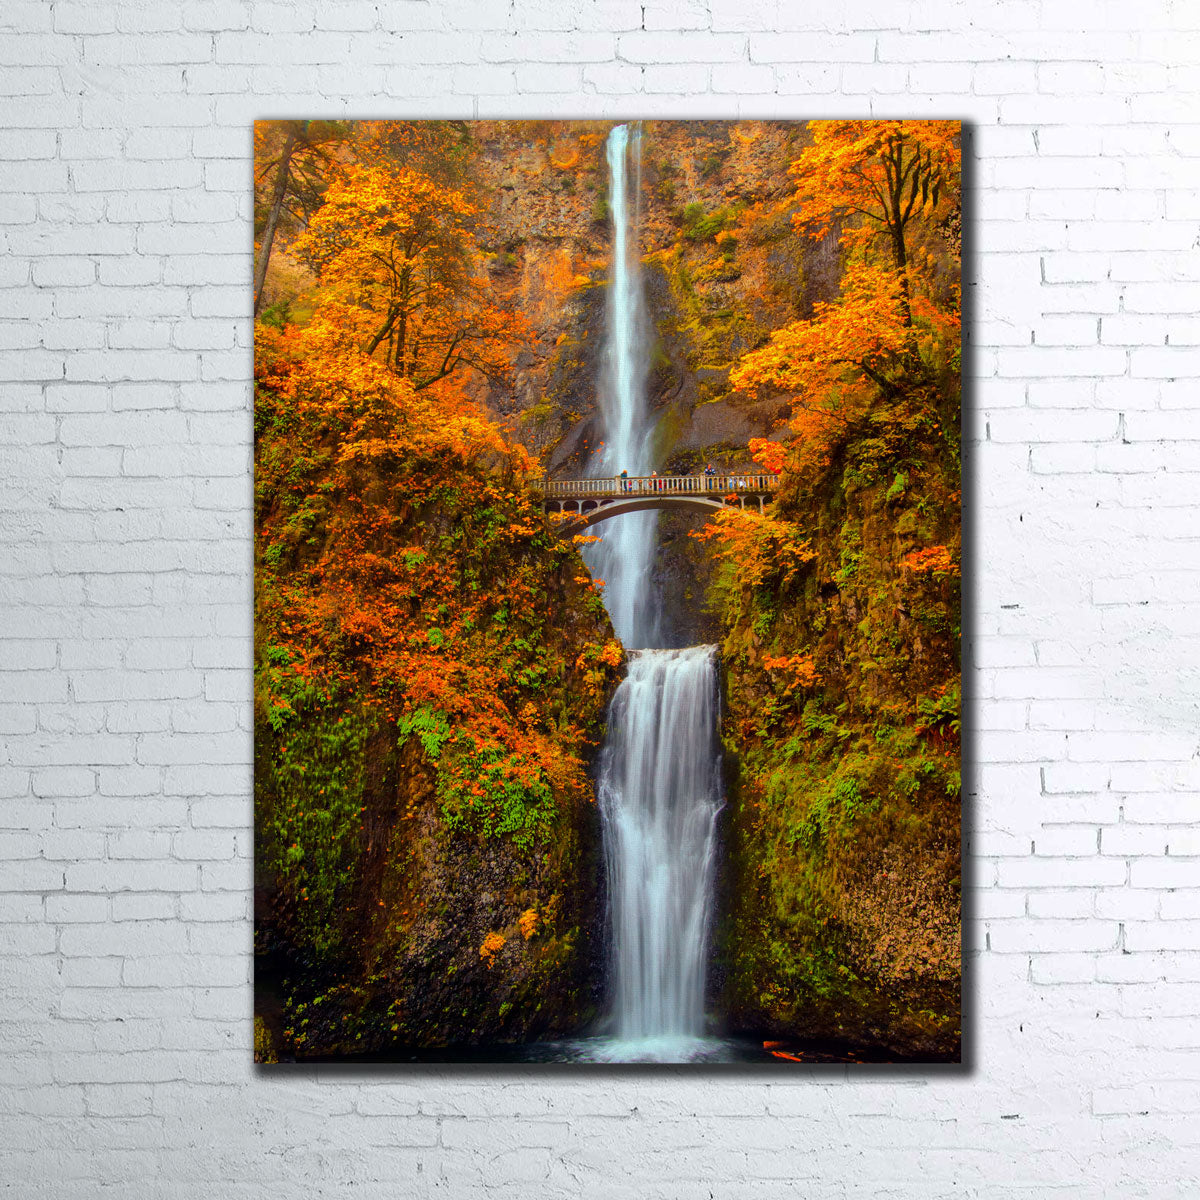 Multnomah Falls - Autumn